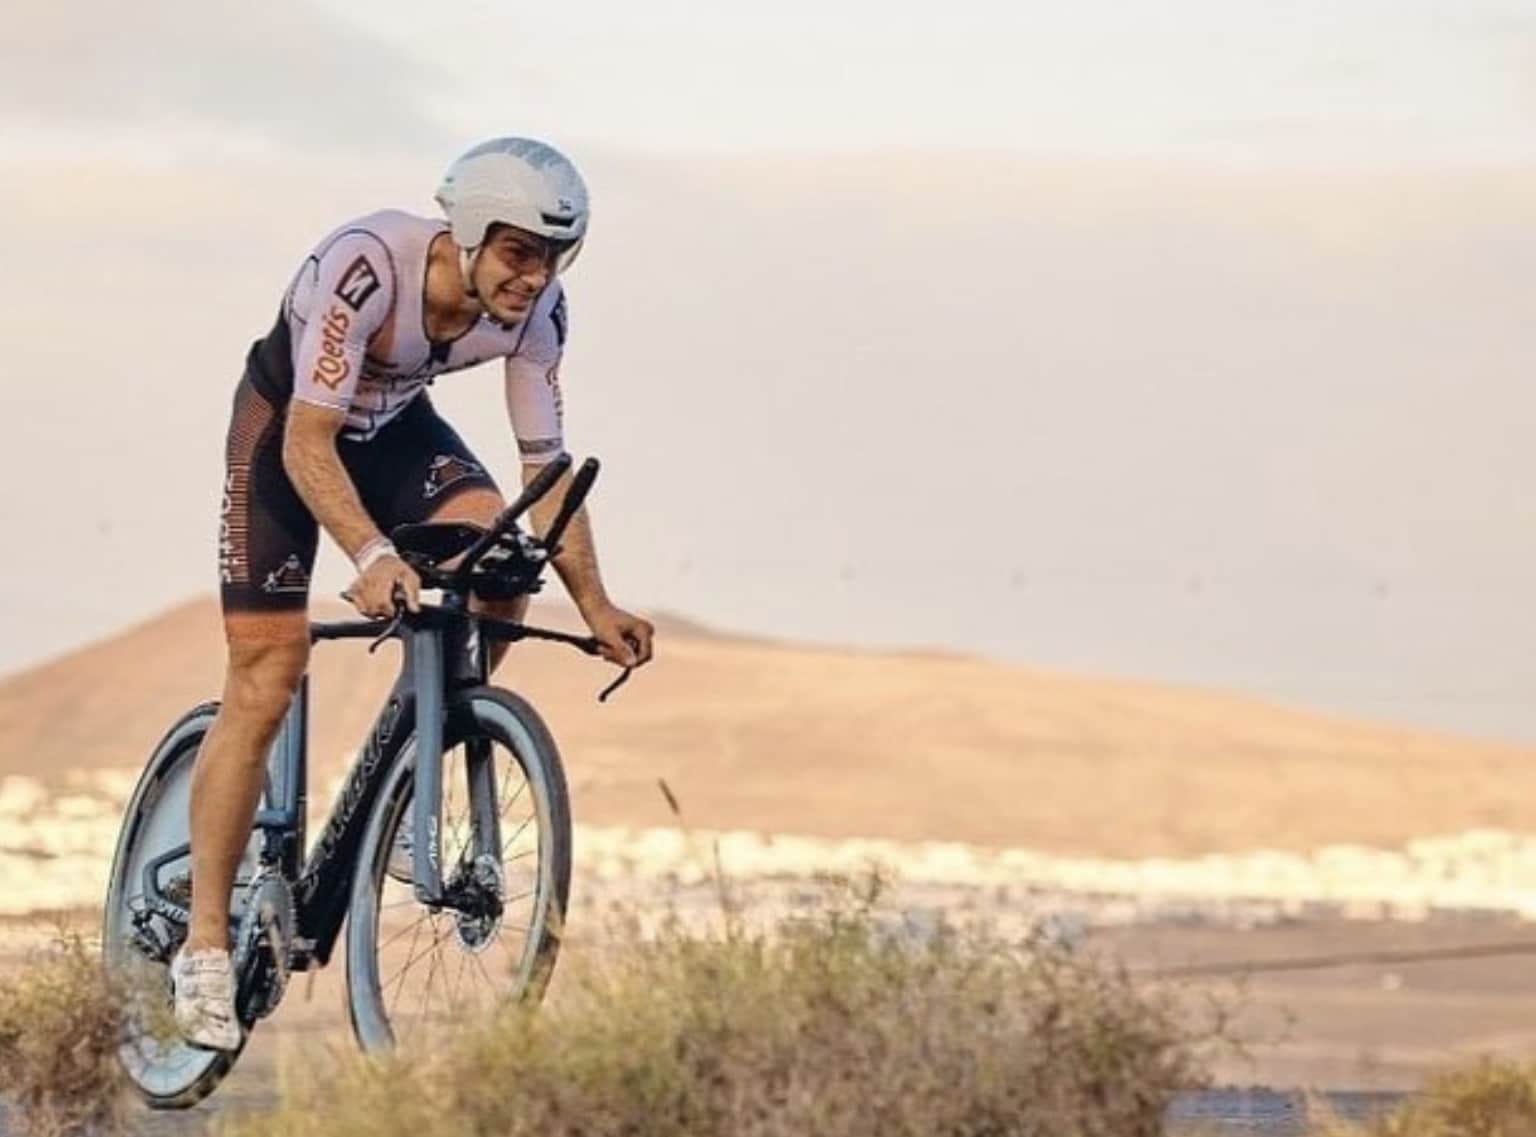 IRONMAN / Bild eines Triathleten auf Lanzarote